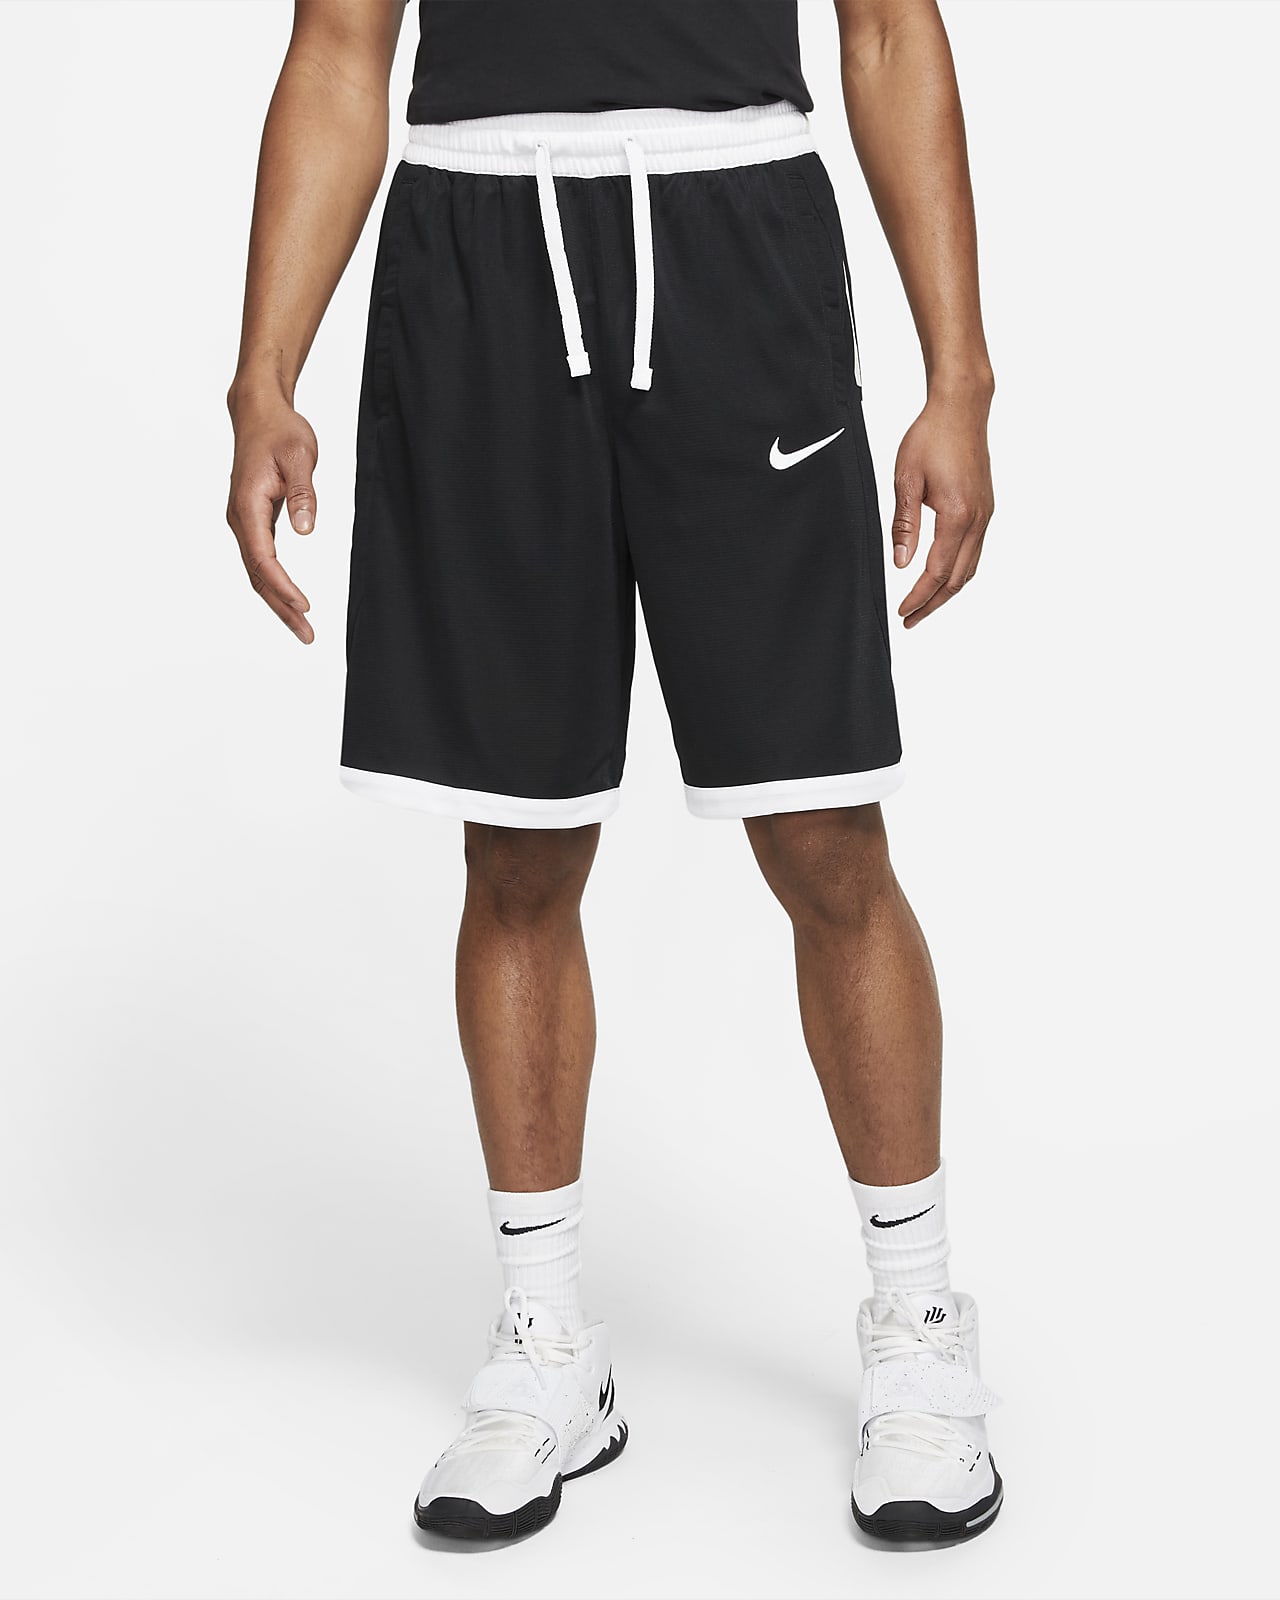 men's elite basketball shorts